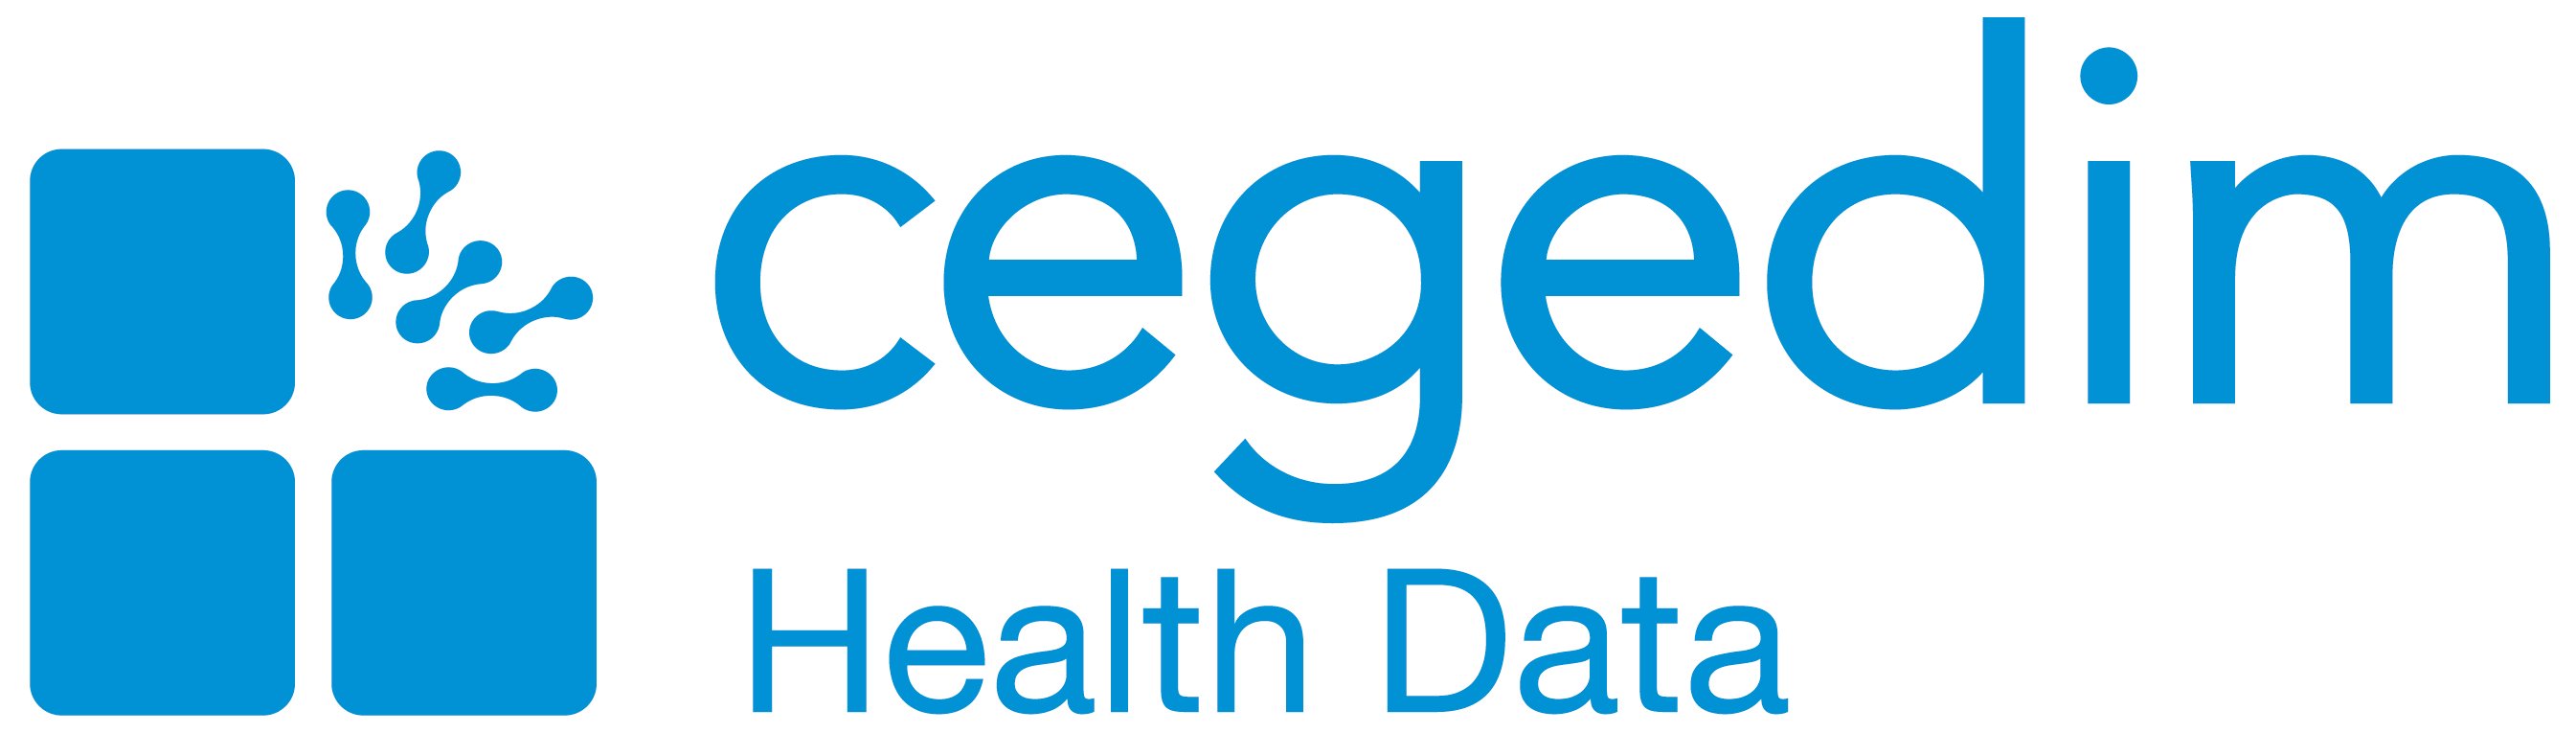 Cegedim Health Data_logo_blue-01